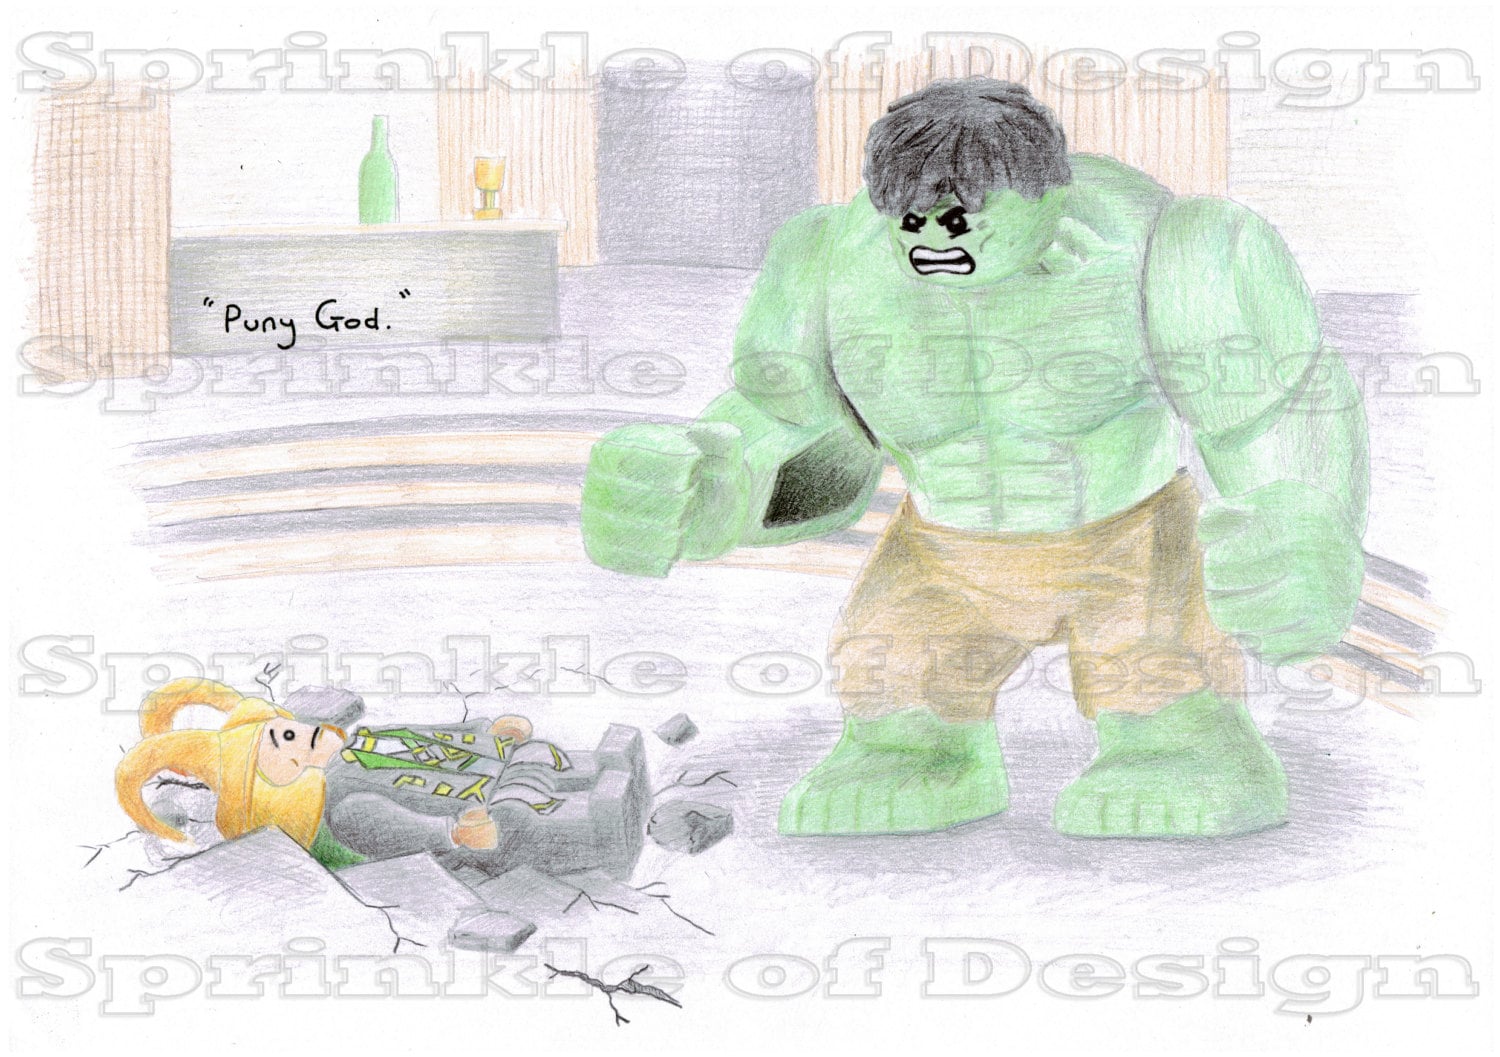 Fan Art Lego Marvel Avengers Movie Illustration Print - Etsy UK